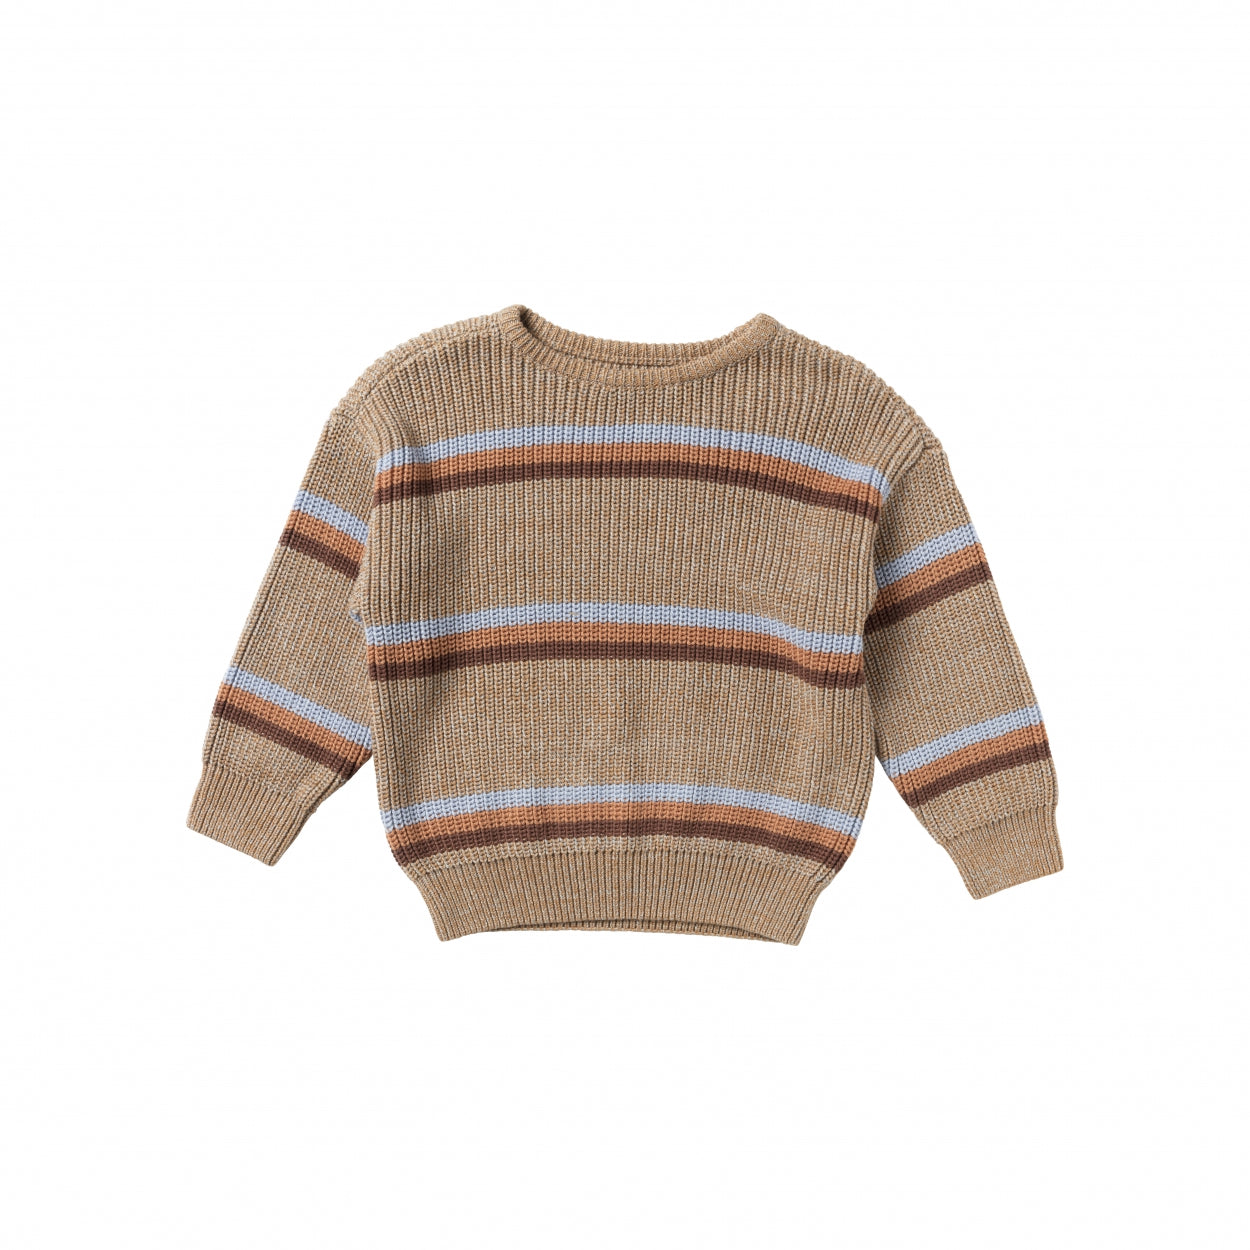 Jongens Sweater Stripe Knit | Mike van Your Wishes in de kleur Multicolor in maat 122-128.